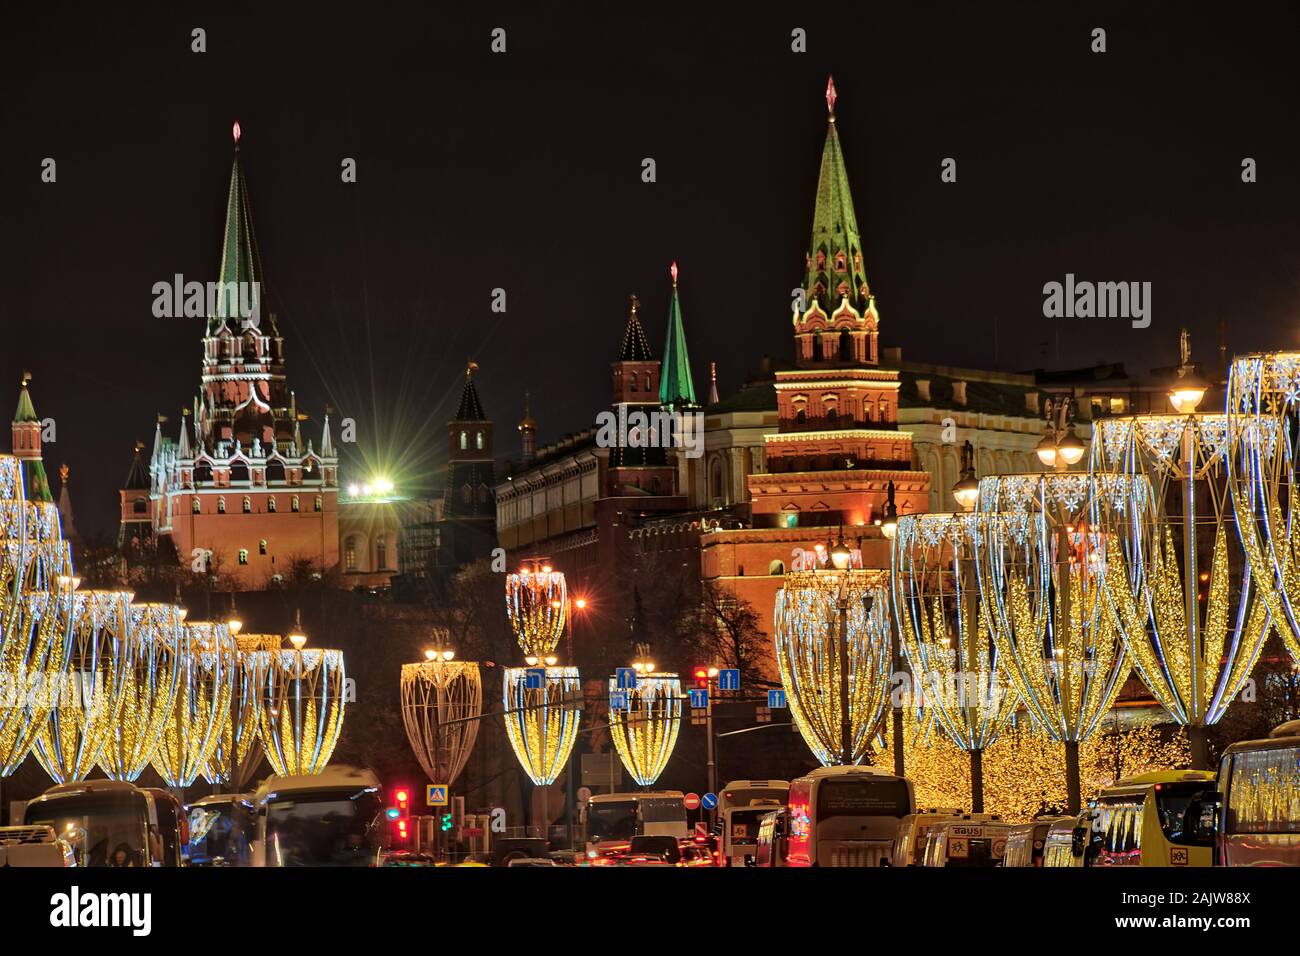 = Weihnachten Straßenlaternen und Moskauer Kreml Türme im Winterurlaub = Weihnachten Straßenbeleuchtung in Form von Gläser Champagner auf Prechistenska Stockfoto